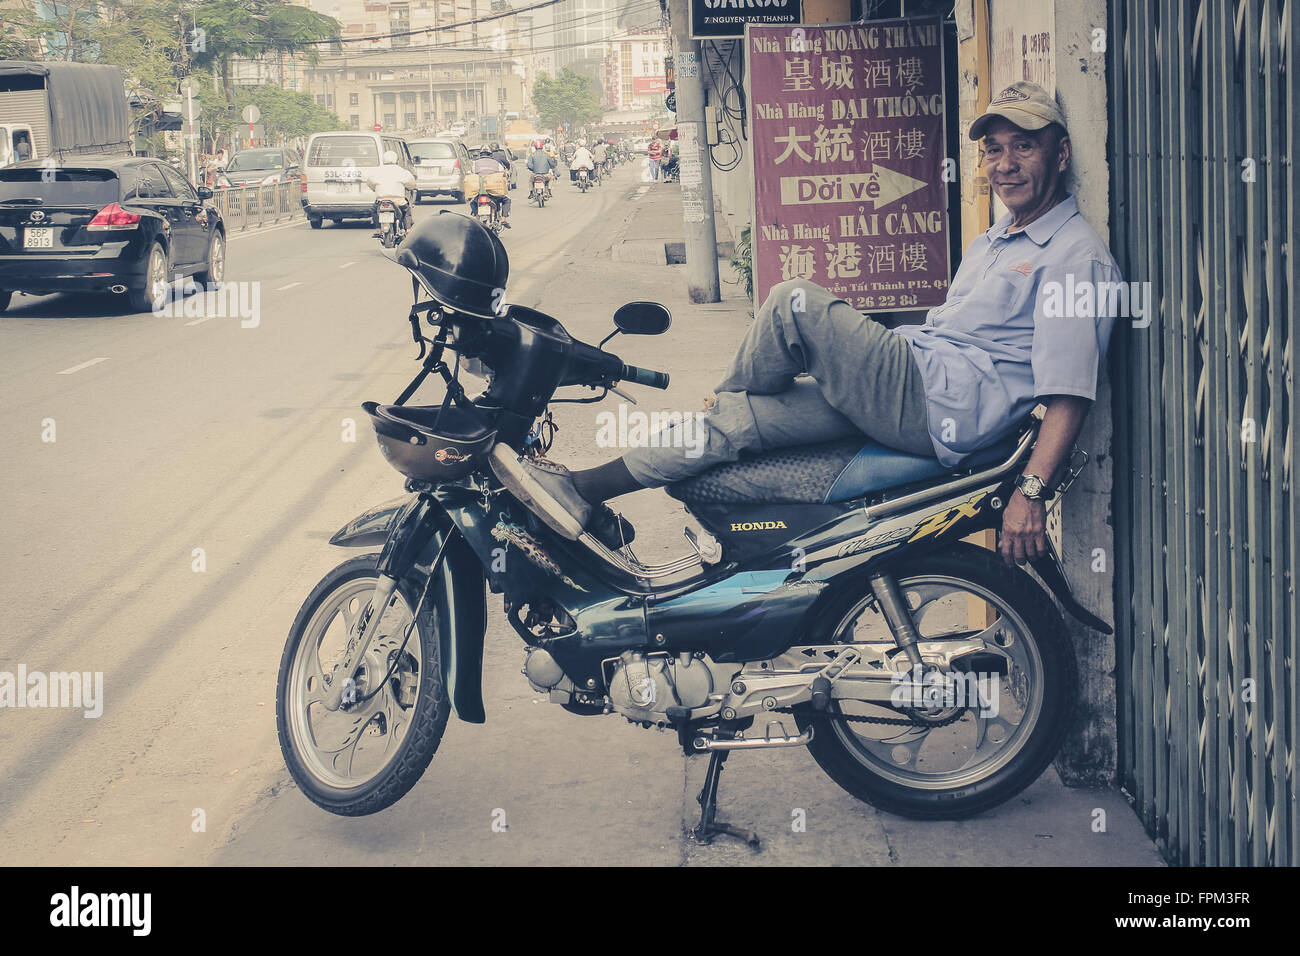 A Saigon, Vietnam - Gennaio 17, 2014: Ritratto di un uomo rilassante sul suo scooter / moto. Saigon è conosciuta come città in moto. Foto Stock